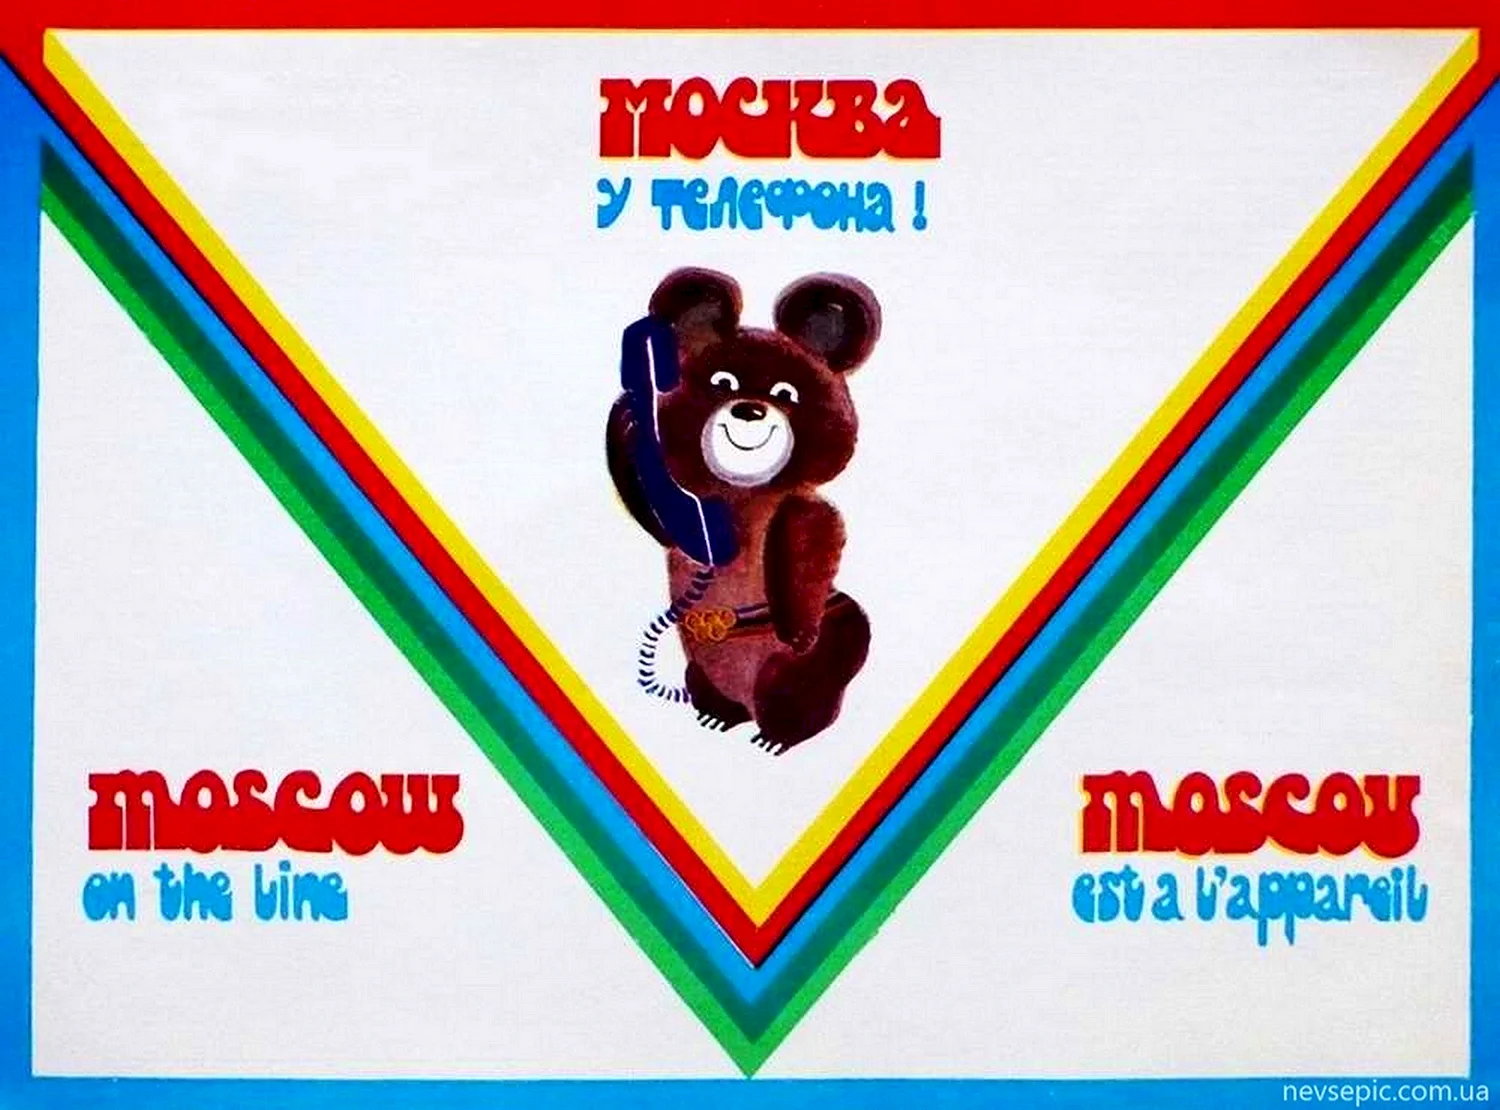 Олимпийский мишка Москва 1980 плакат